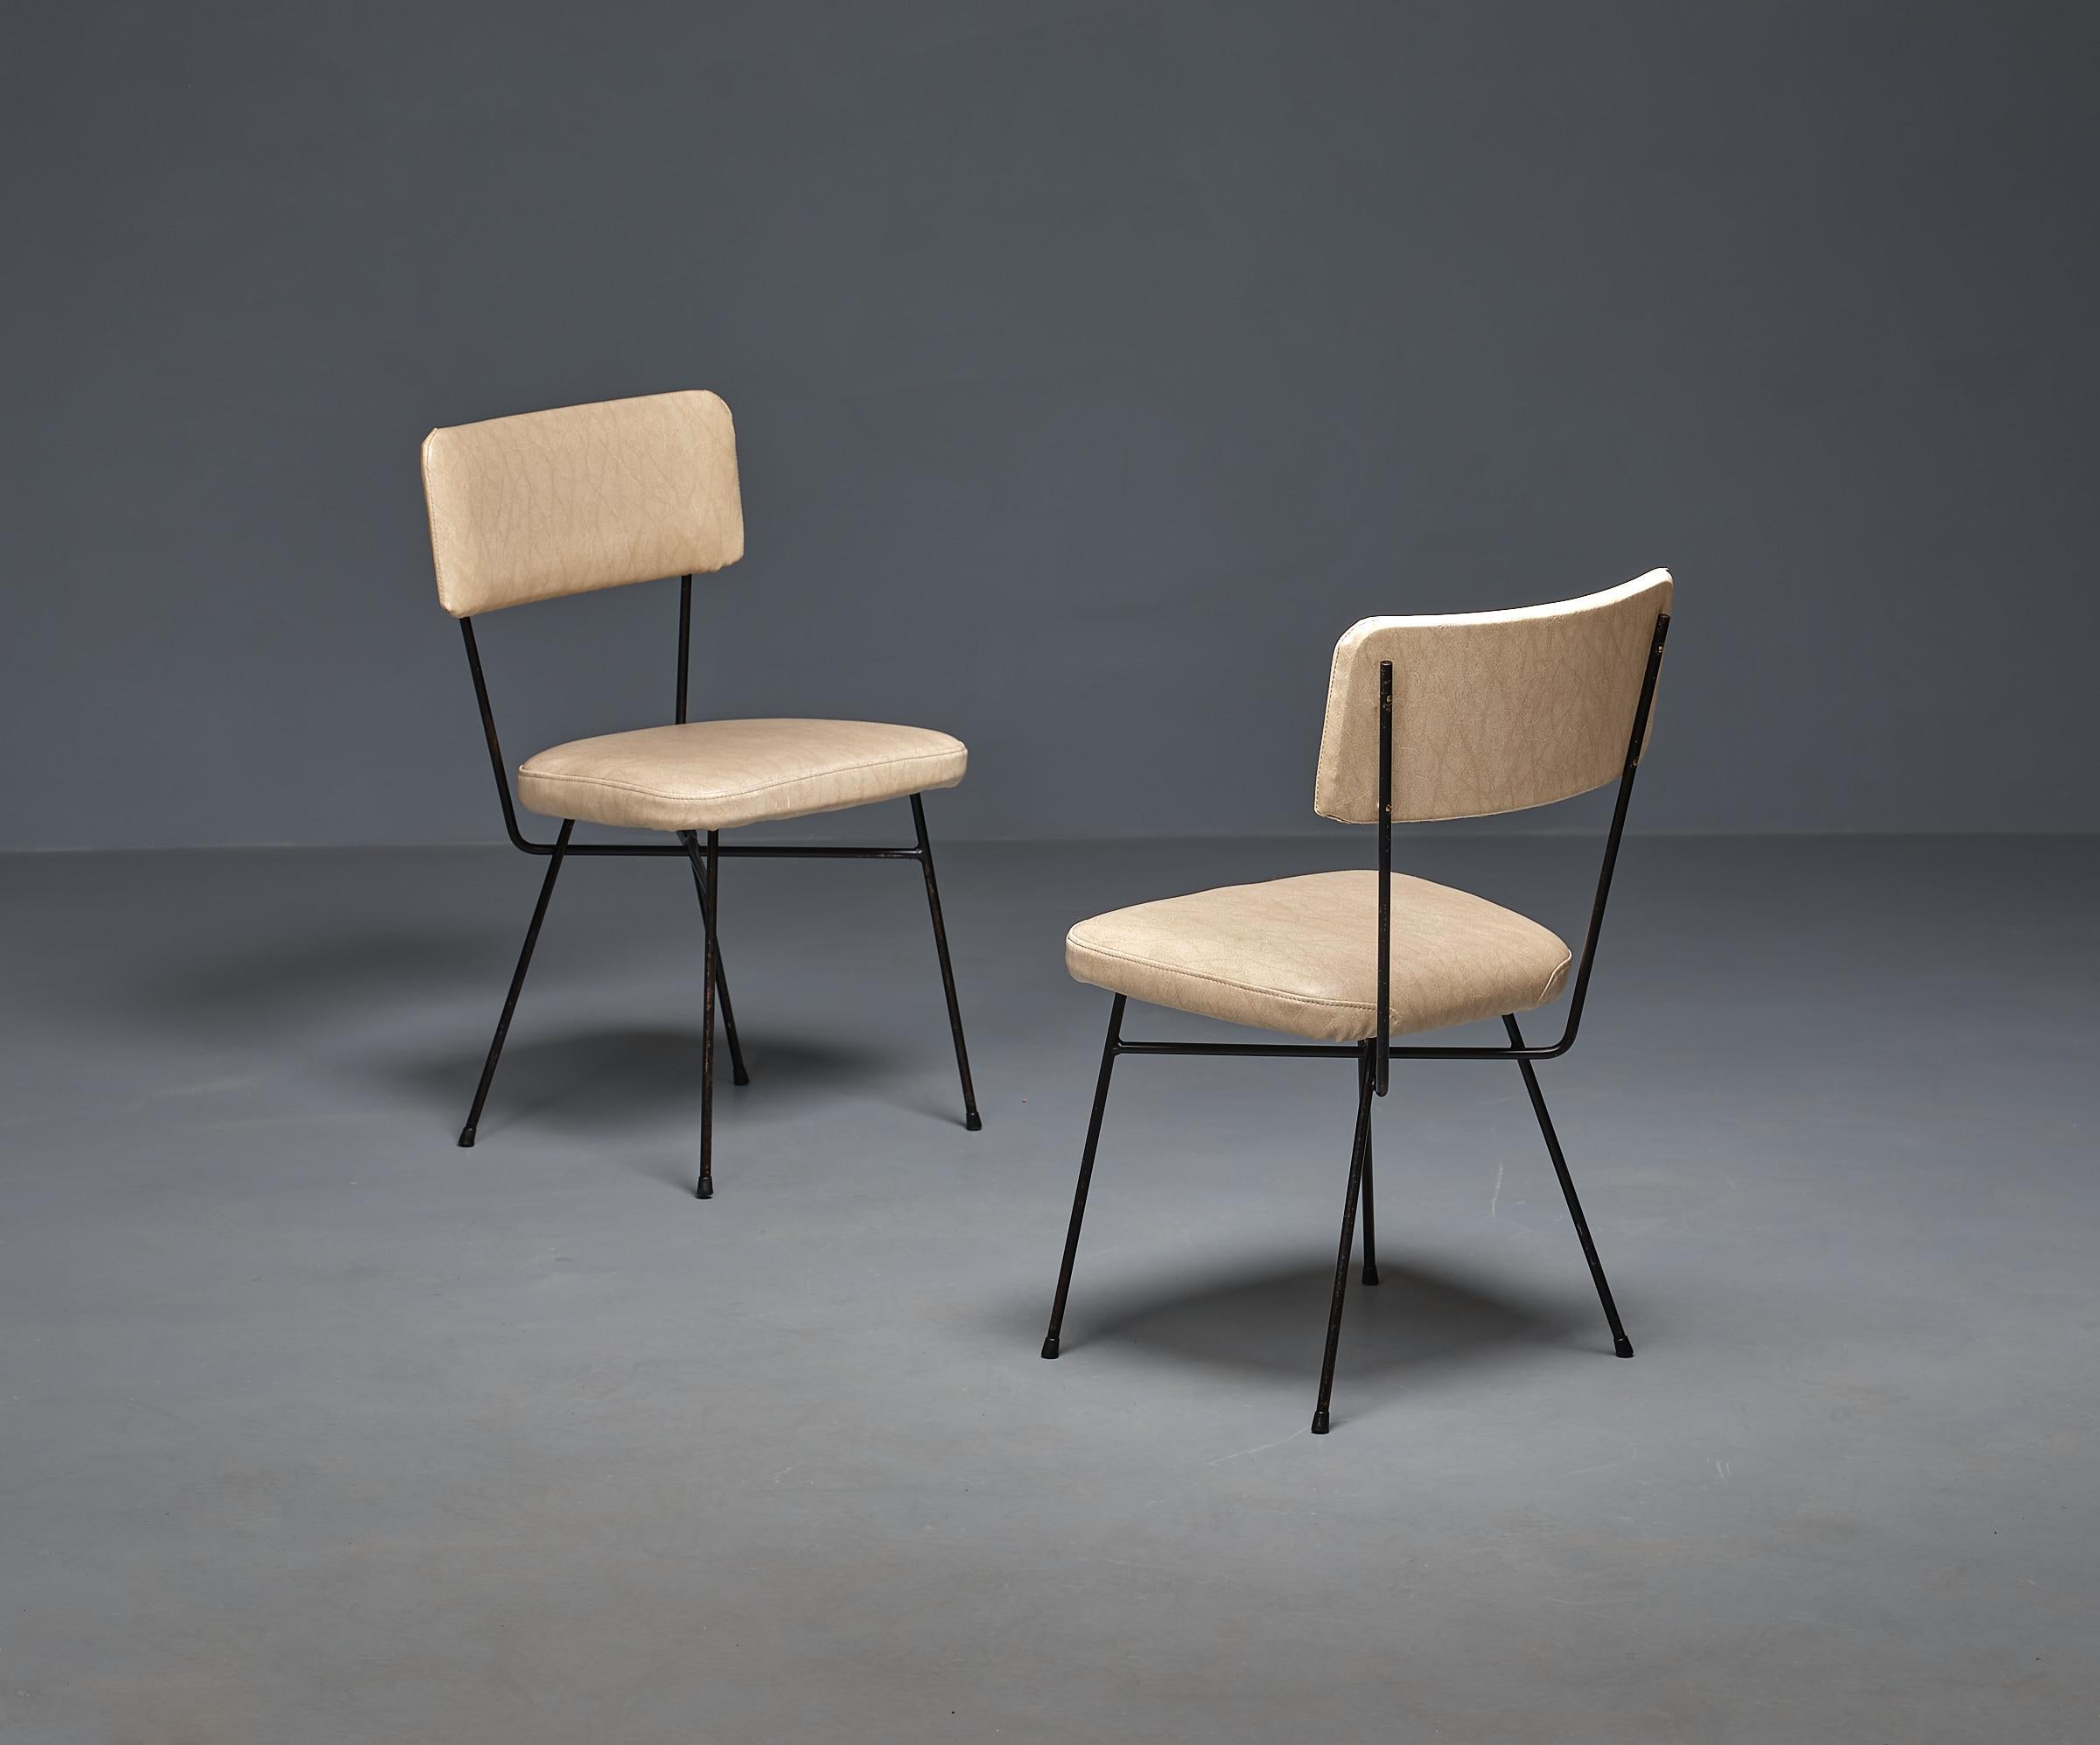 Vintage Byne présente une paire captivante de chaises vintage des années 1950. Ces chaises sont un magnifique clin d'œil au design italien du milieu du siècle.

Avec leur solide armature en fer peinte en noir, ces chaises ont une allure